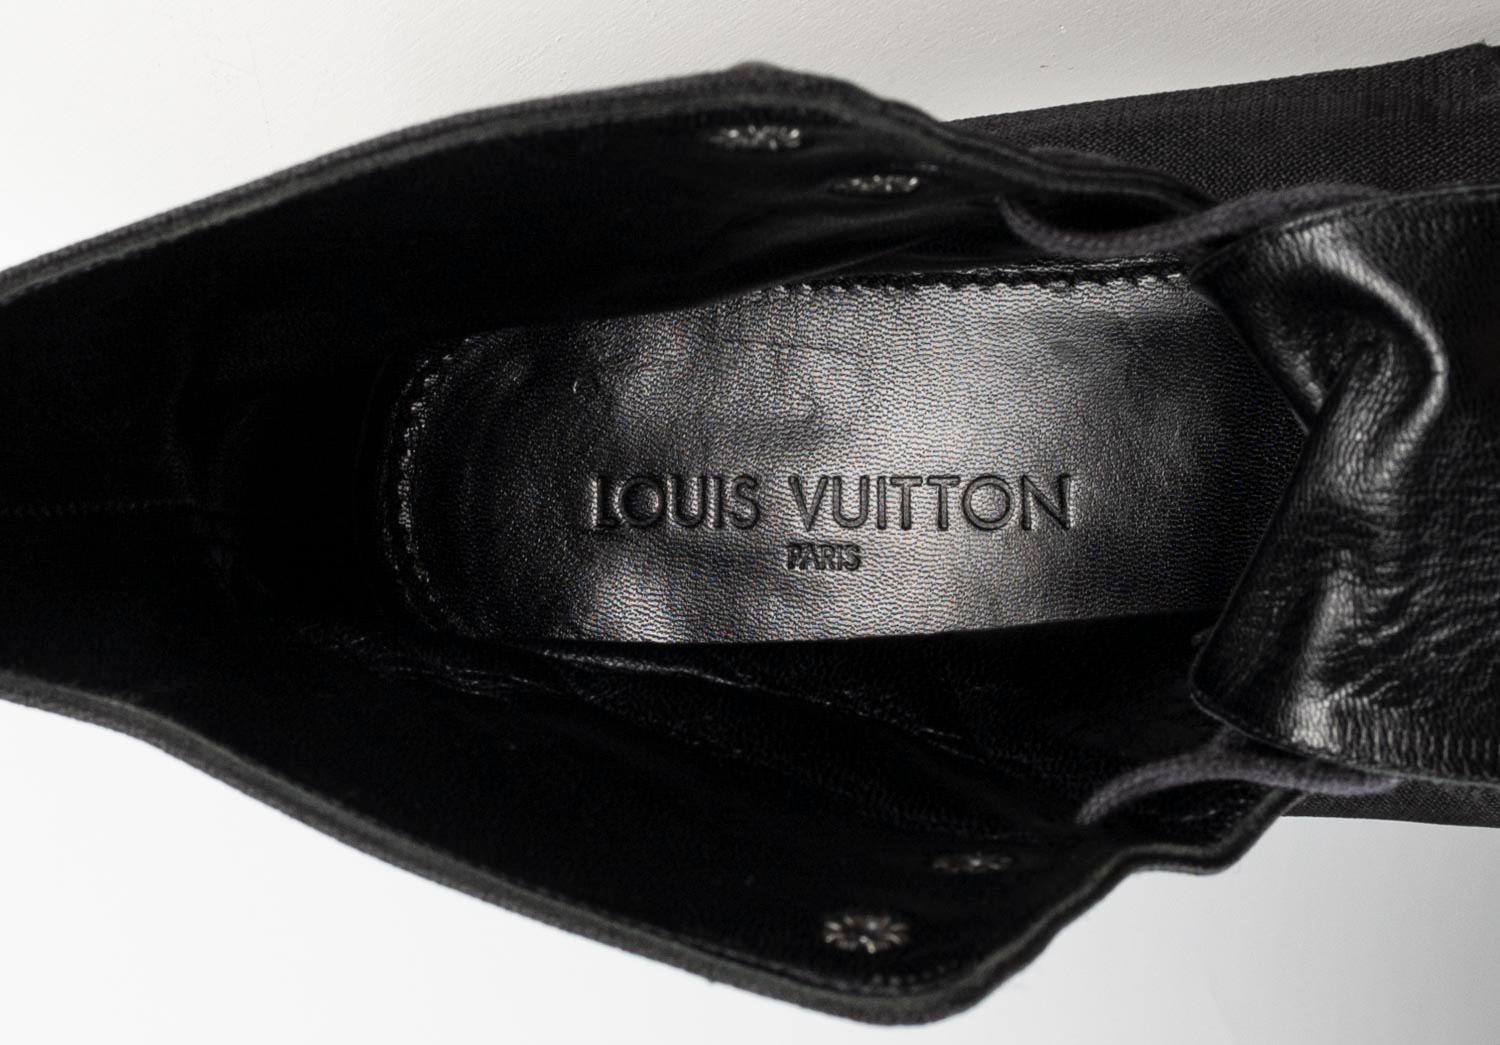  Louis Vuitton Men Shoes Military Nylon Light Boots, Size UK10, S667  For Sale 3